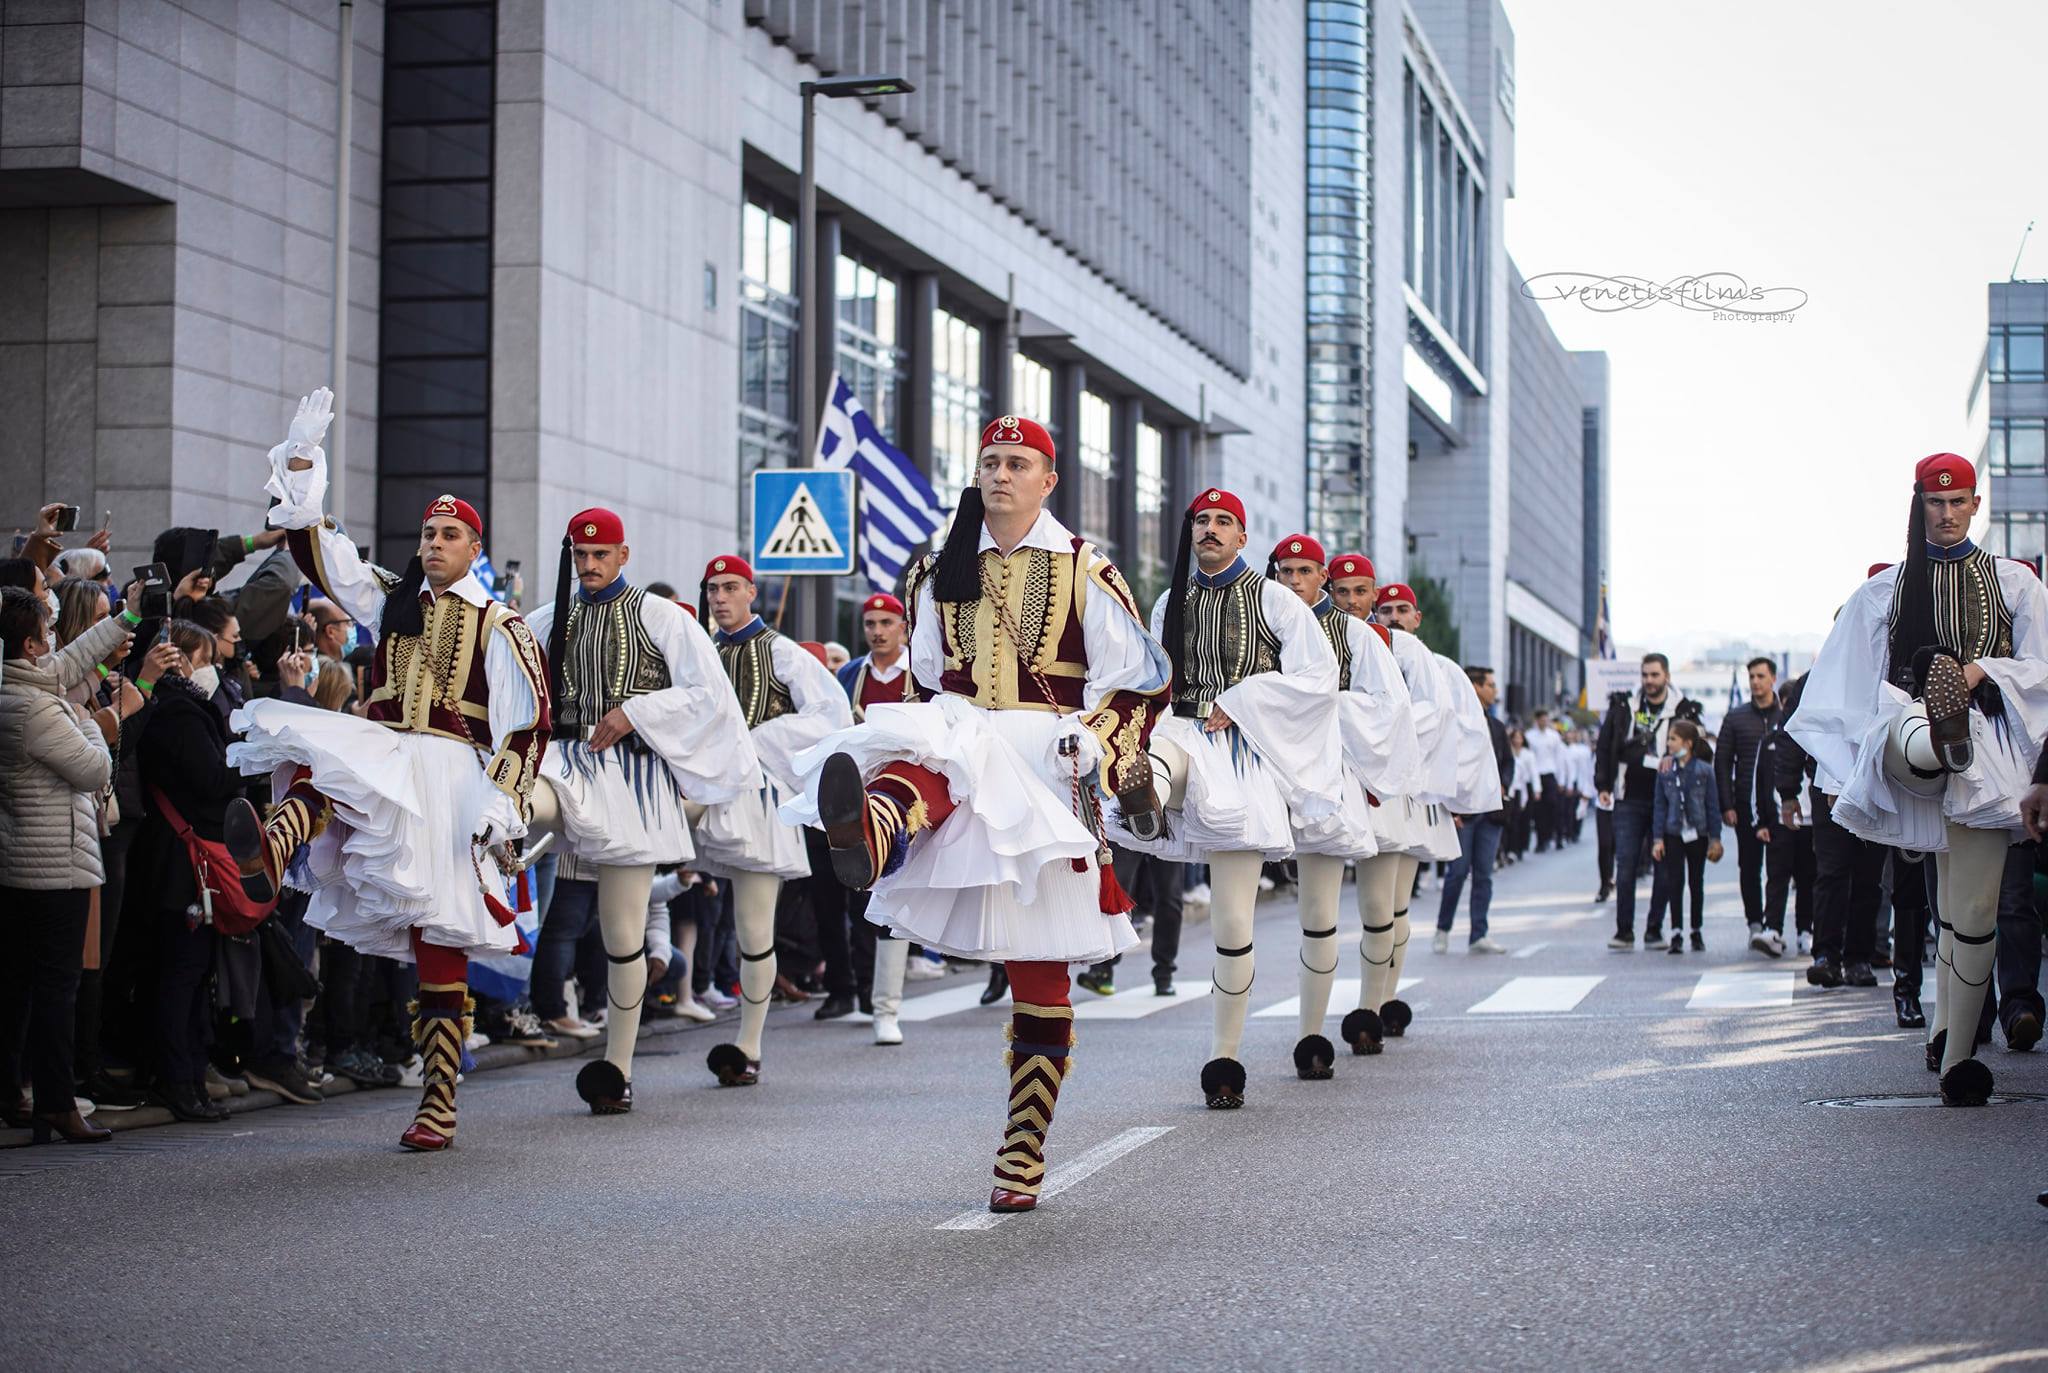 Οι Έλληνες της Στουτγάρδης γιόρτασαν τα 200 χρόνια από την Ελληνική Επανάσταση